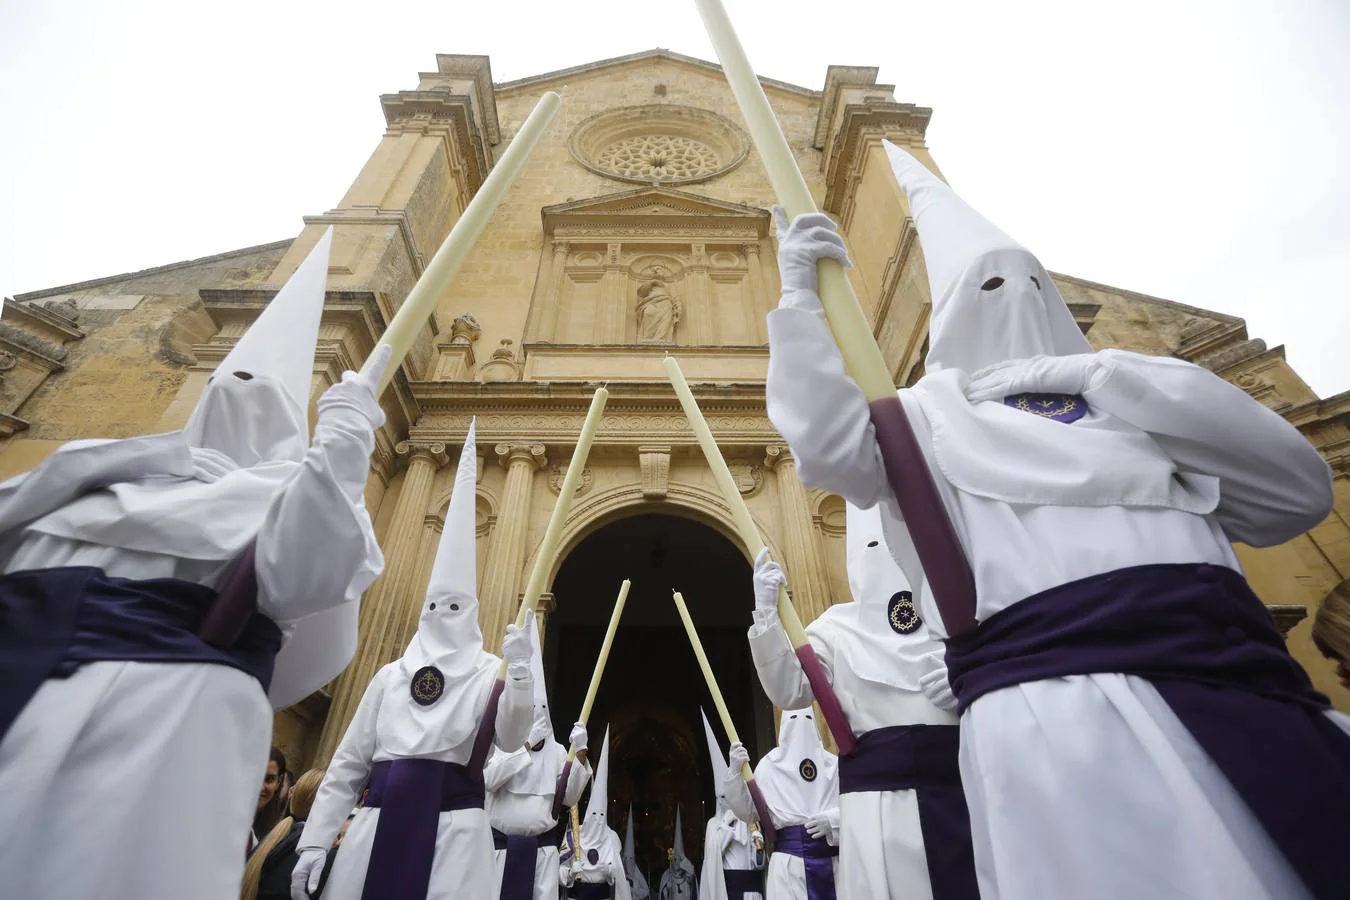 La procesión de la Misericordia de Córdoba, en imágenes